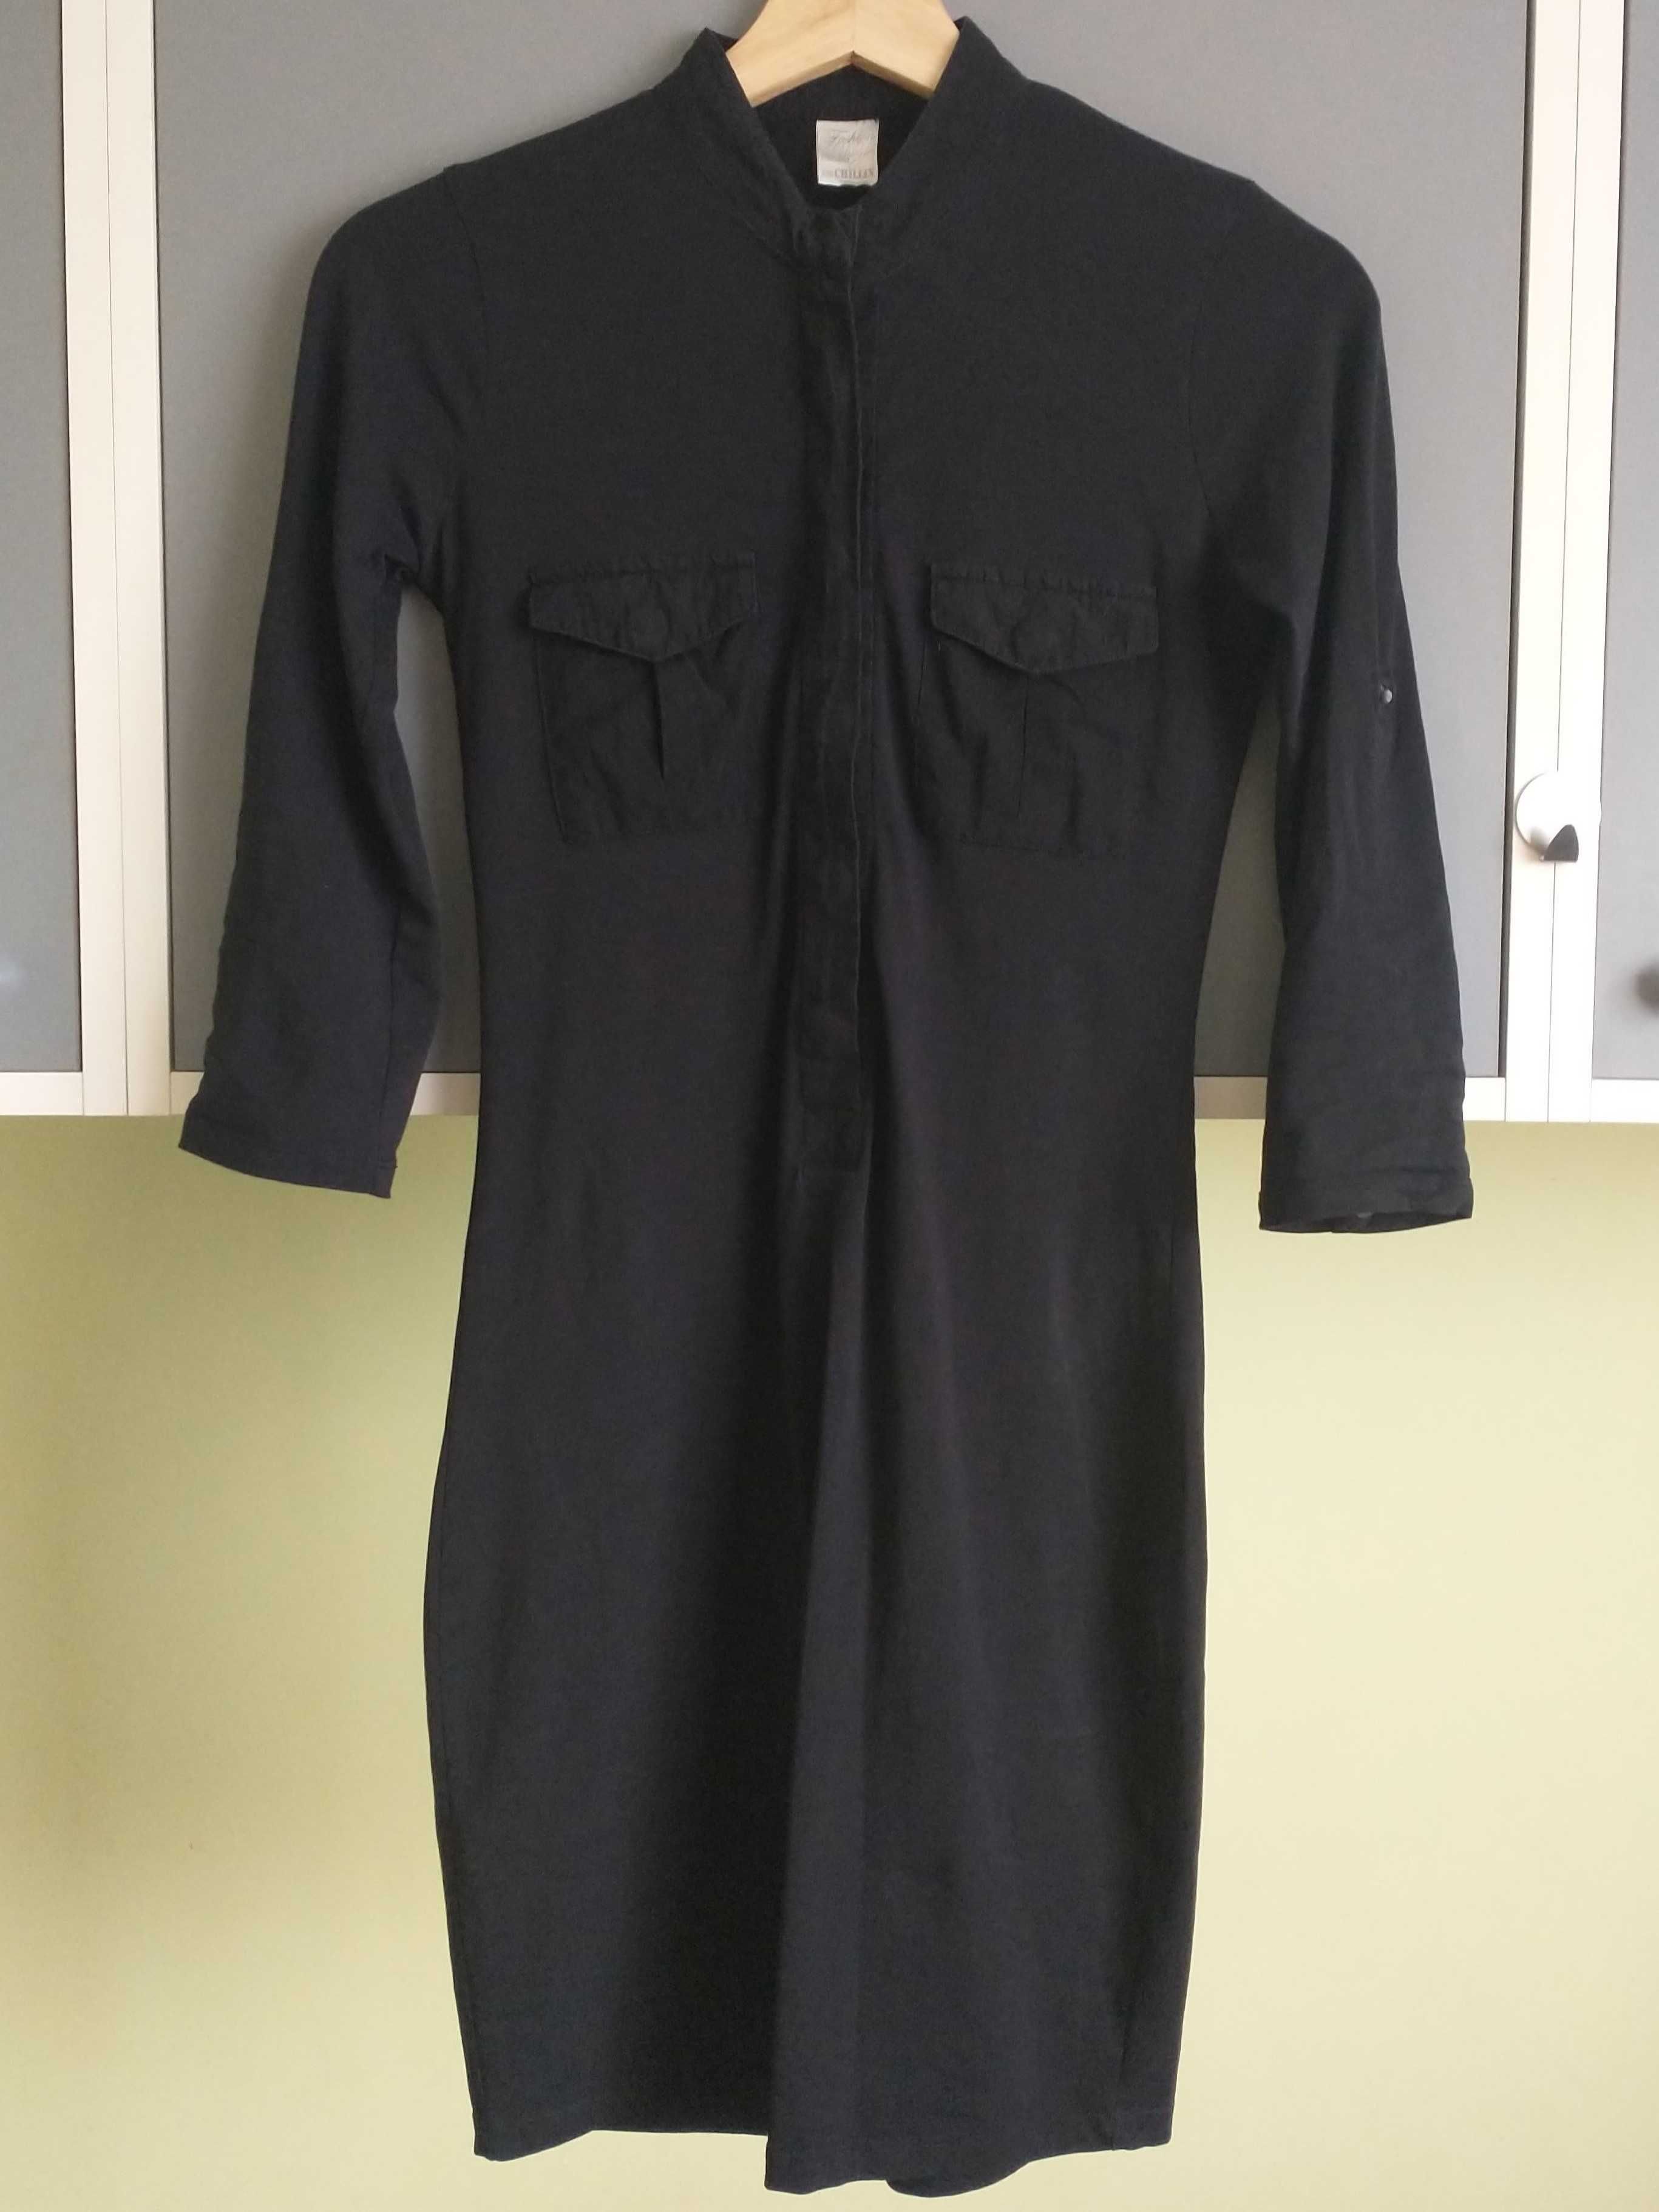 czarna sukienka z 3/4 rękawem marki fashion duty, chillin rozmiar xs